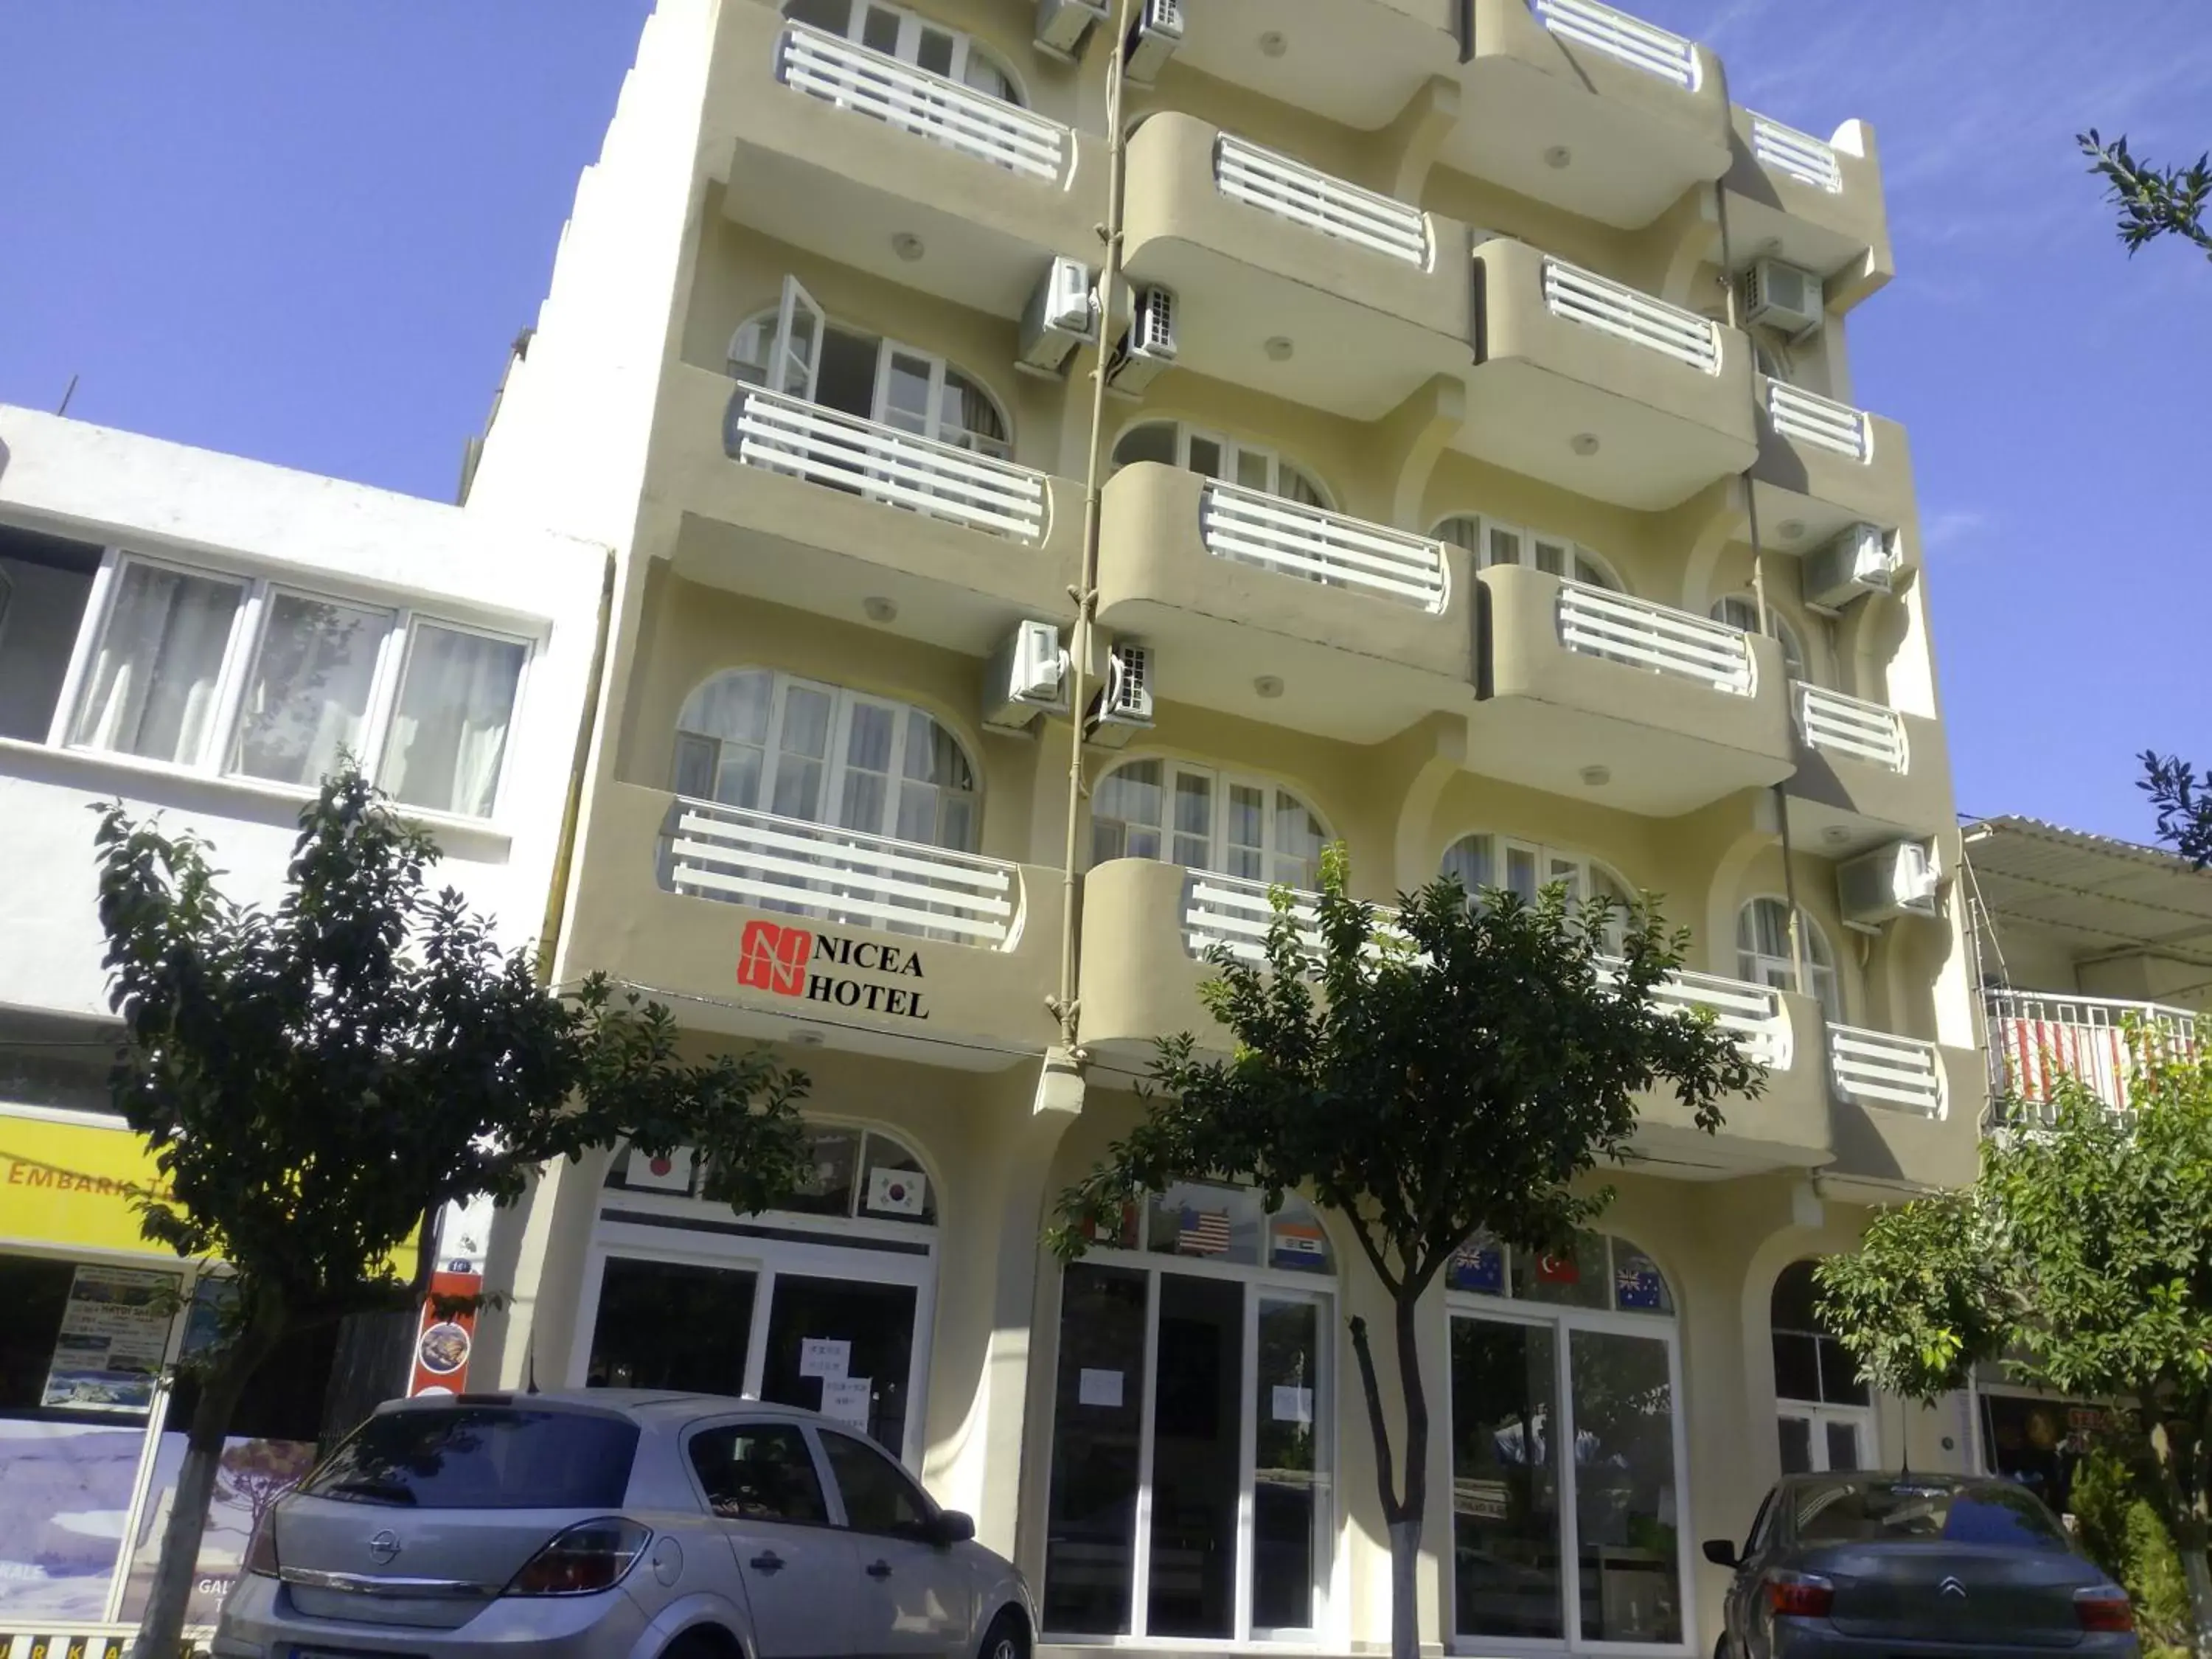 Facade/entrance, Property Building in Nicea Hotel